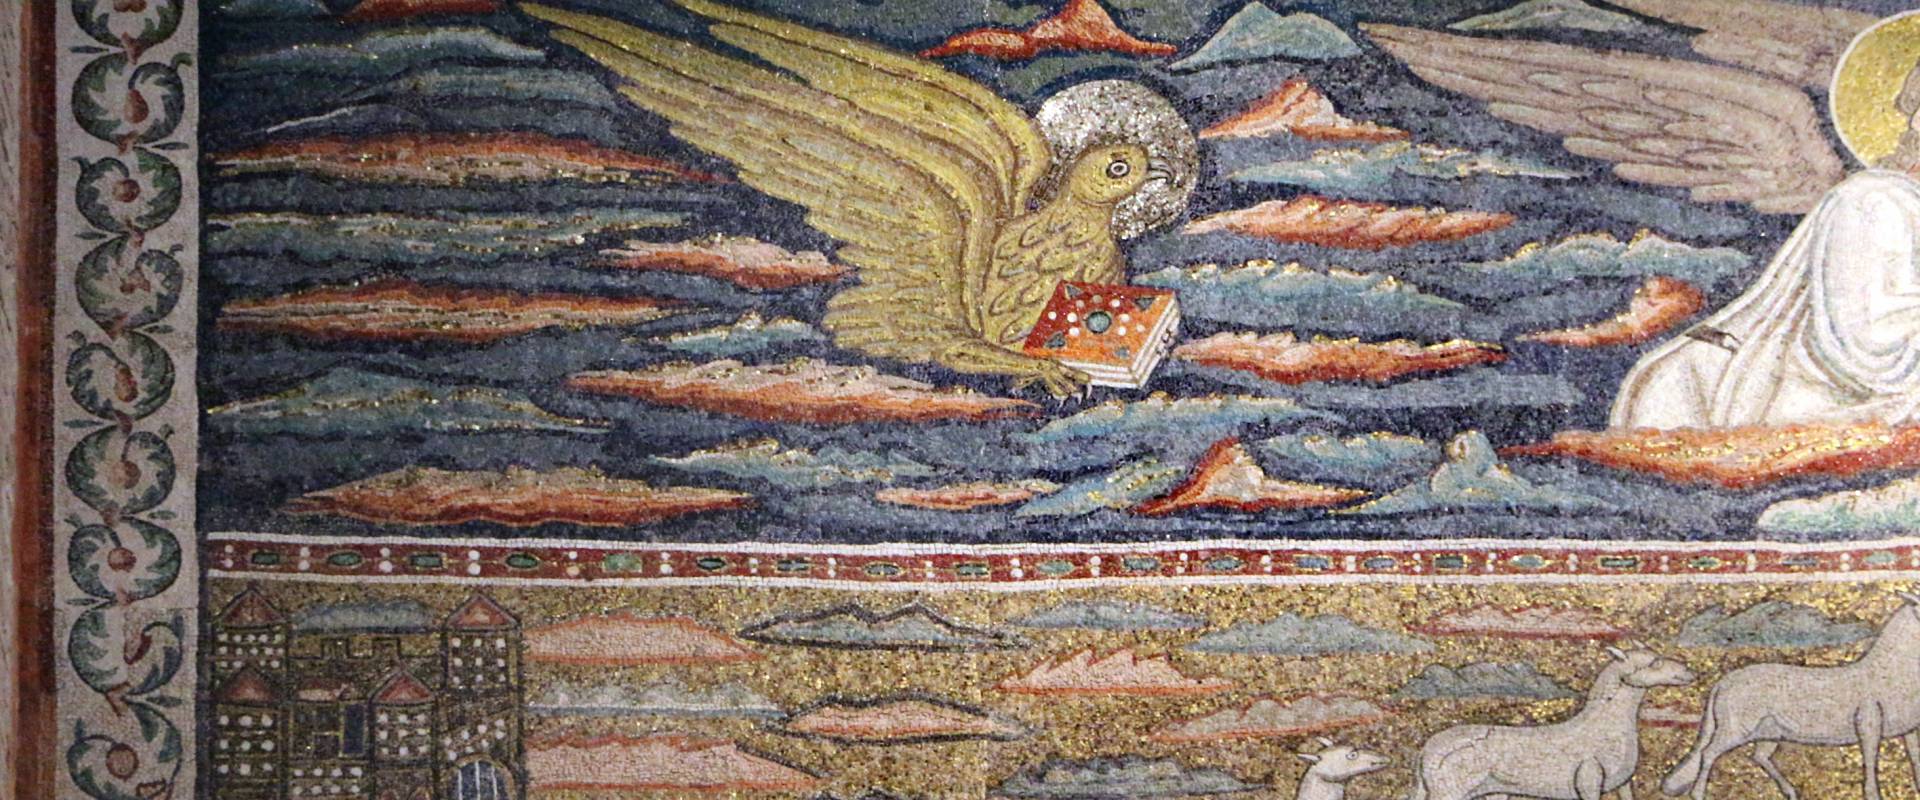 Sant'apollinare in classe, mosaici dell'arcone, cristo benedicente tra i simboli degli evangelisti (IX sec.) 01 giovanni foto di Sailko